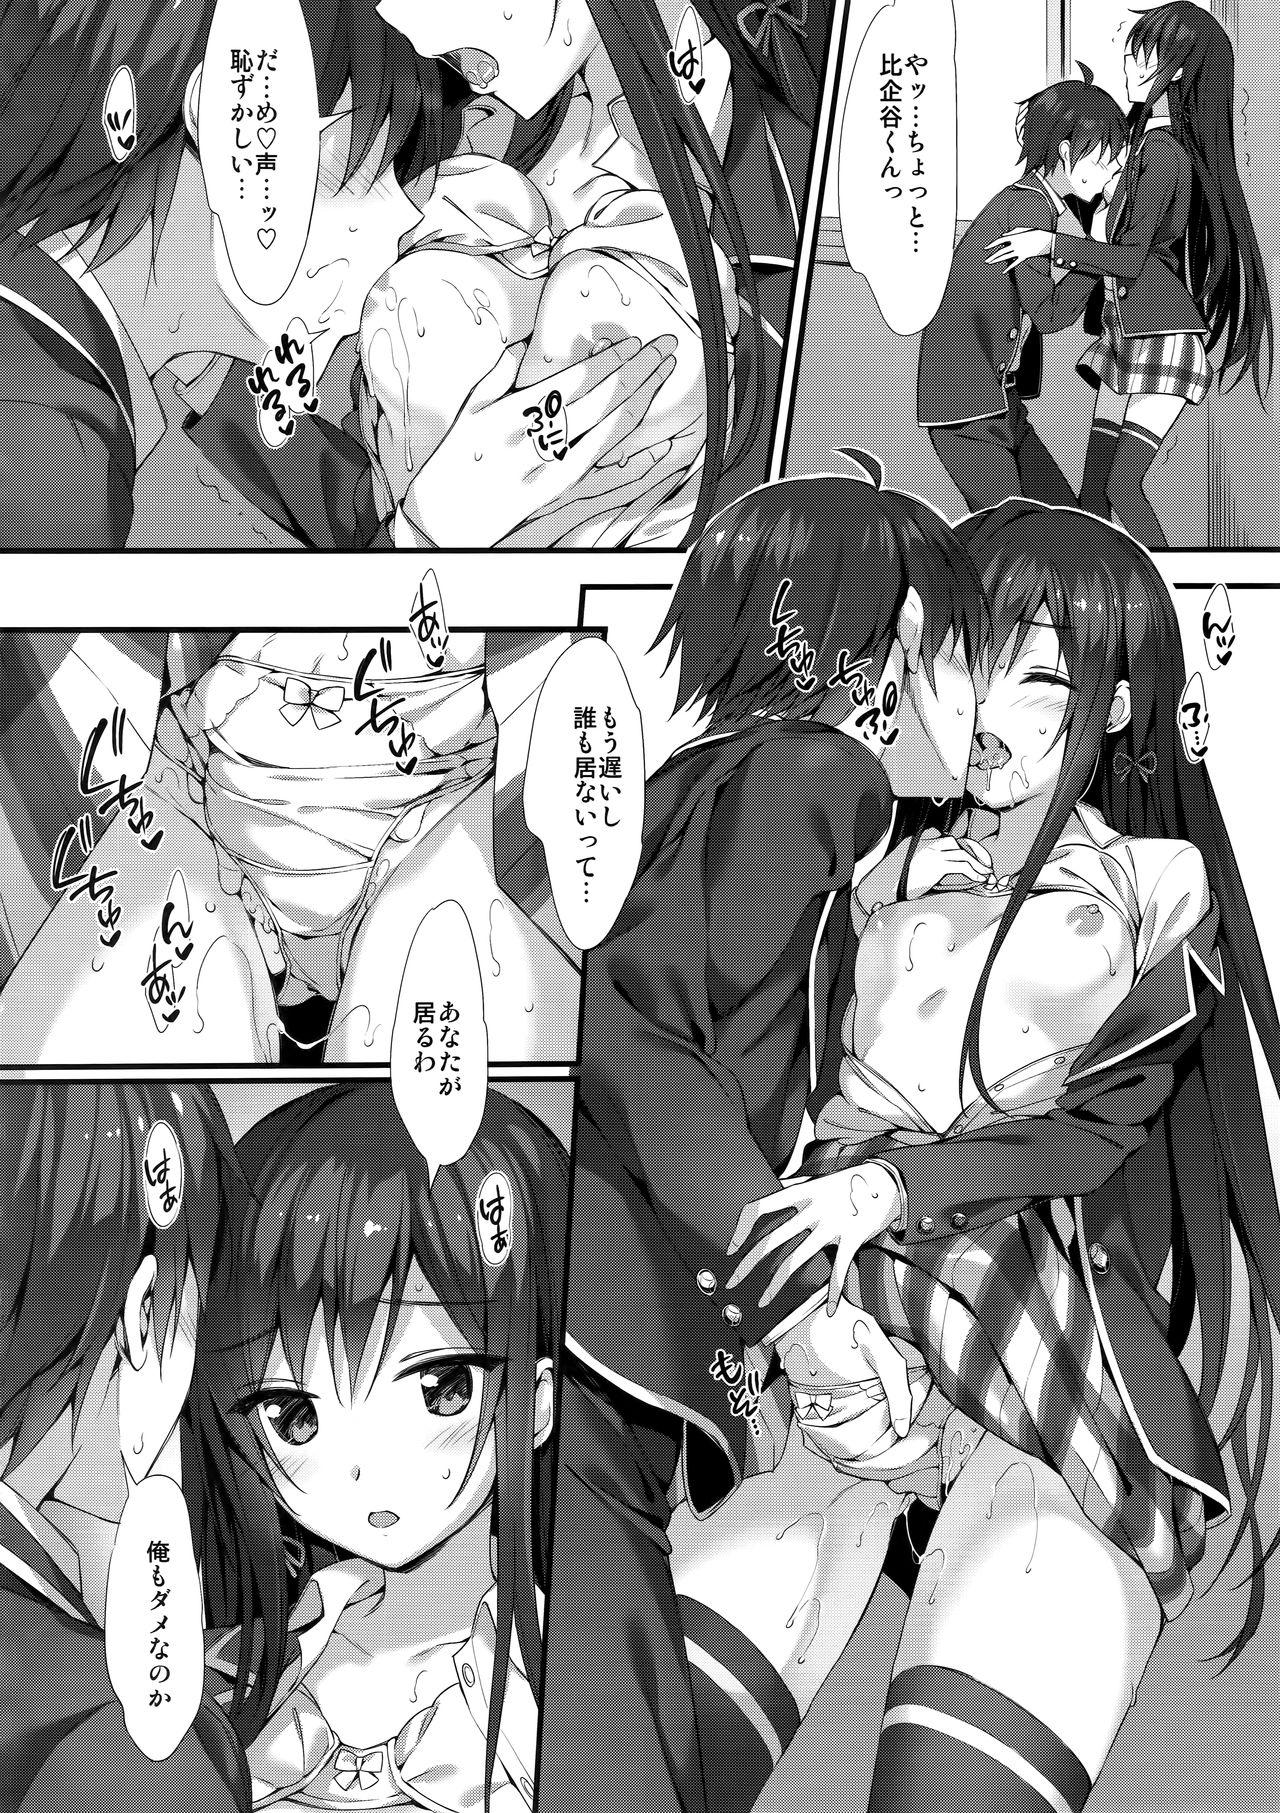 Interracial Hardcore Yukinon Gentei 3 - Yahari ore no seishun love come wa machigatteiru Pregnant - Page 4